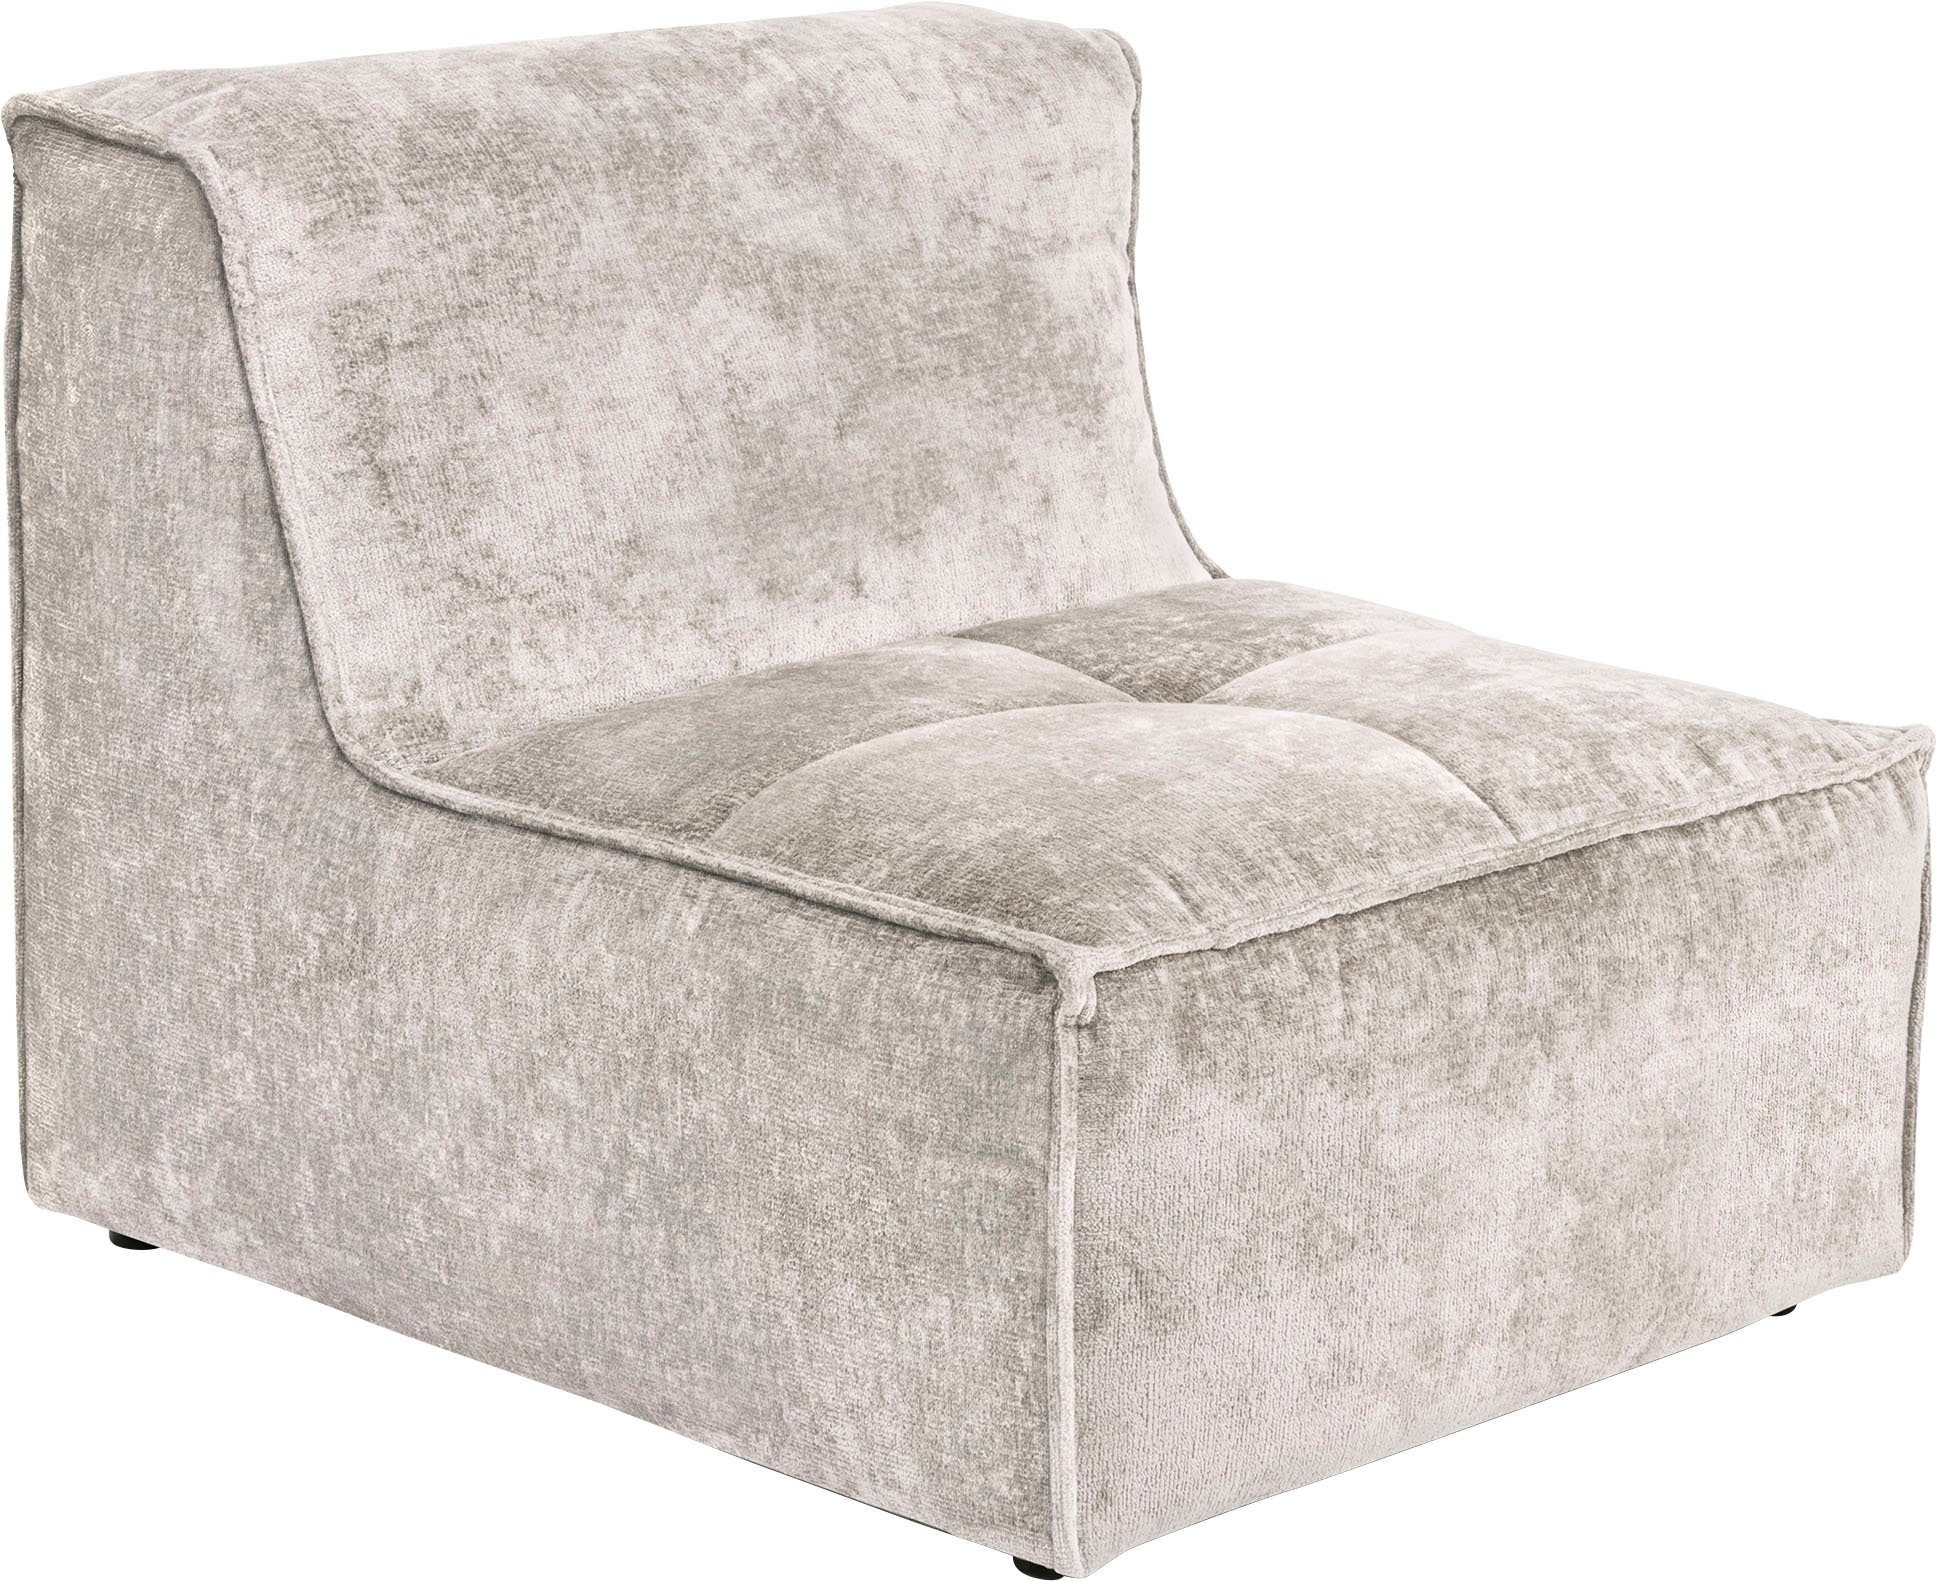 verwendbar, Zusammenstellung Sofa-Mittelelement für Monolid oder individuelle St), beige RAUM.ID (1 Modul separat als